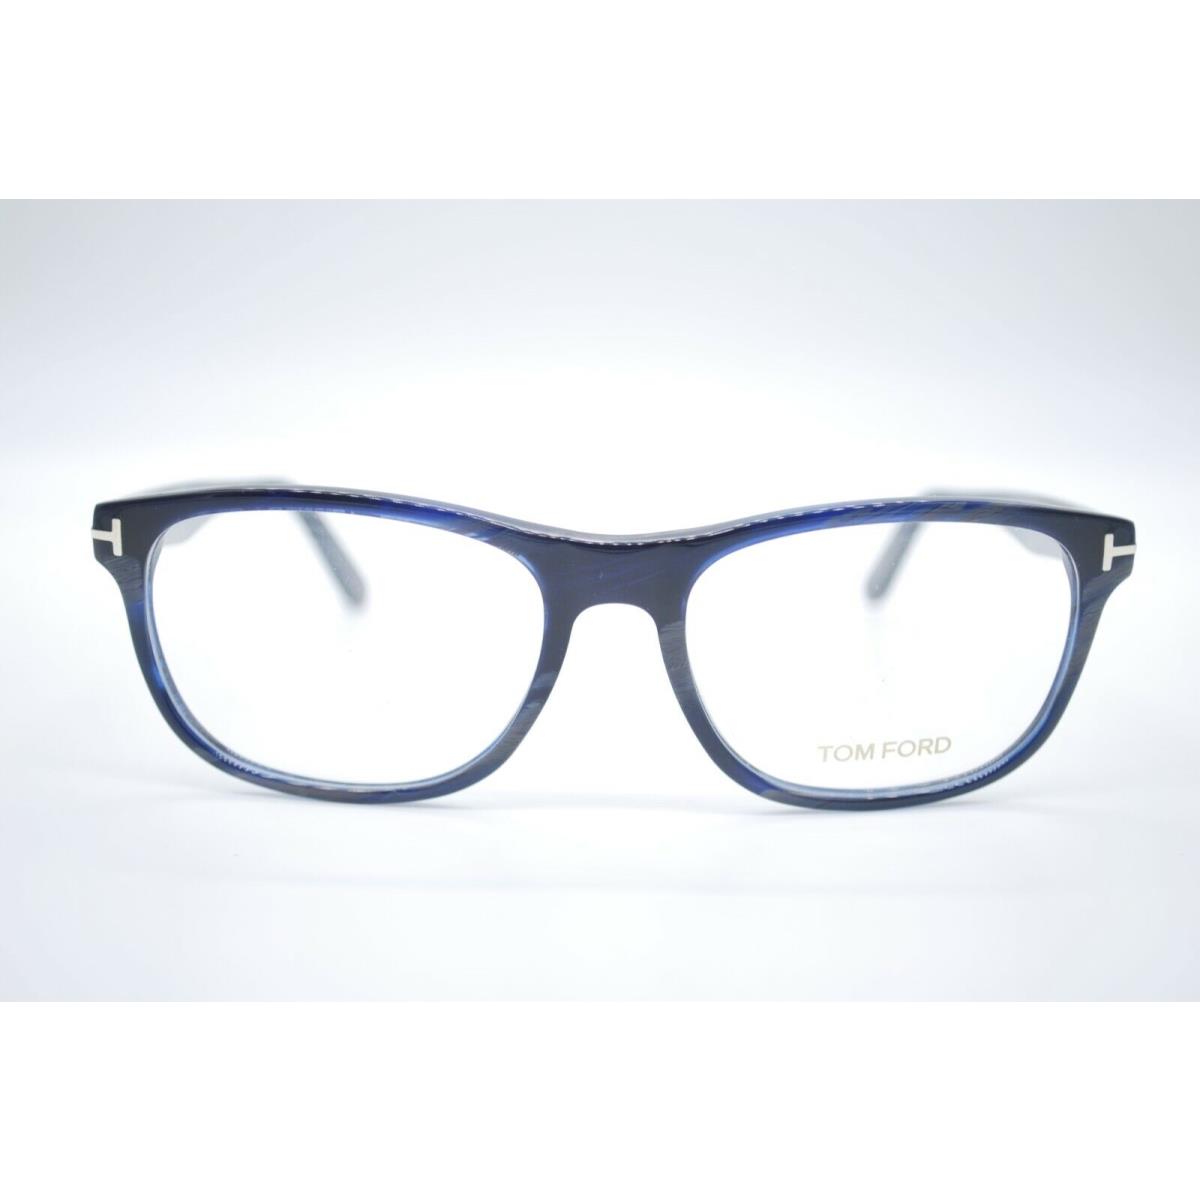 Tom Ford eyeglasses  - BLUE HORN Frame 1